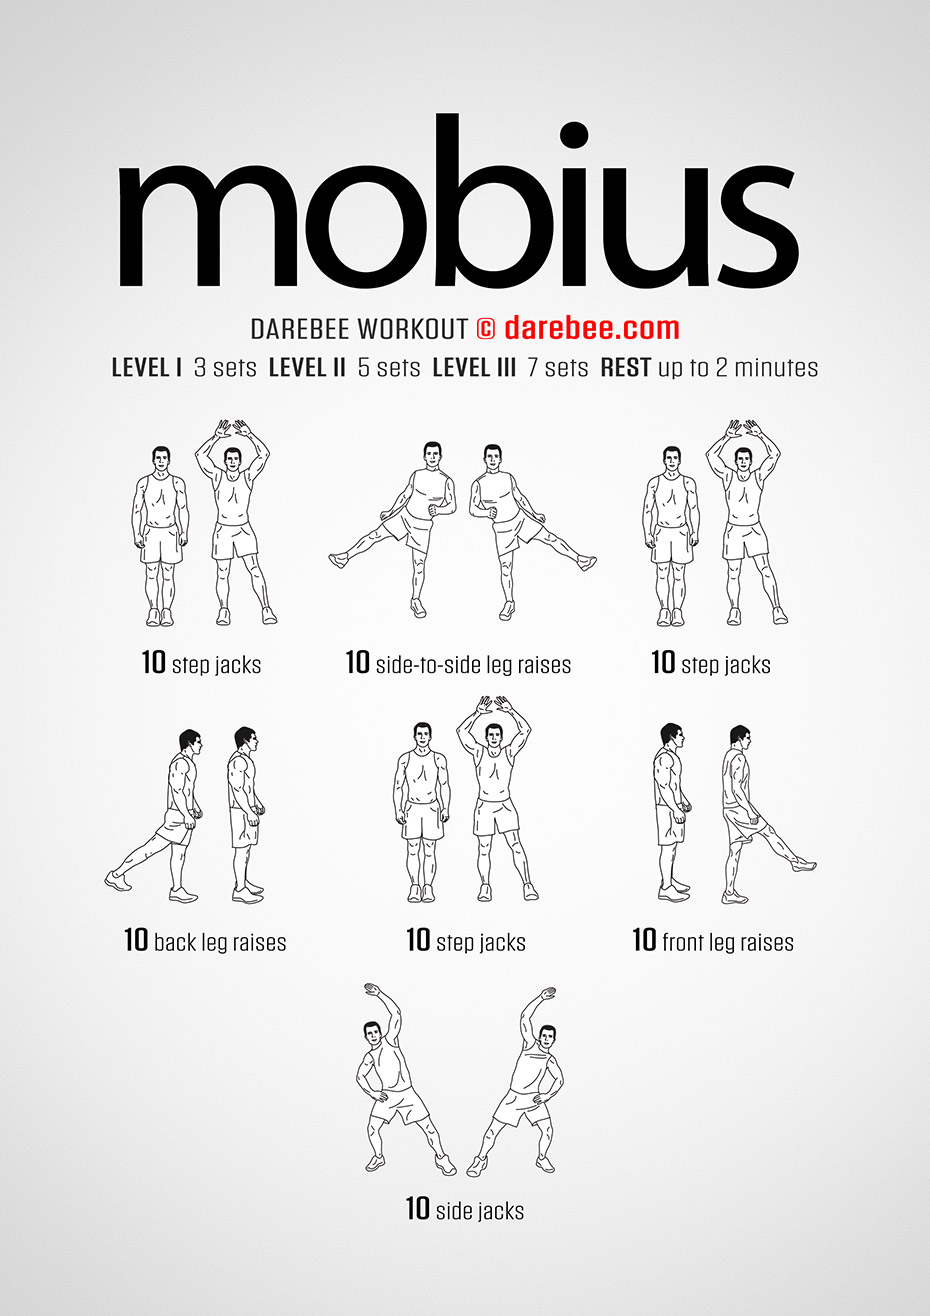 Mobius Workout